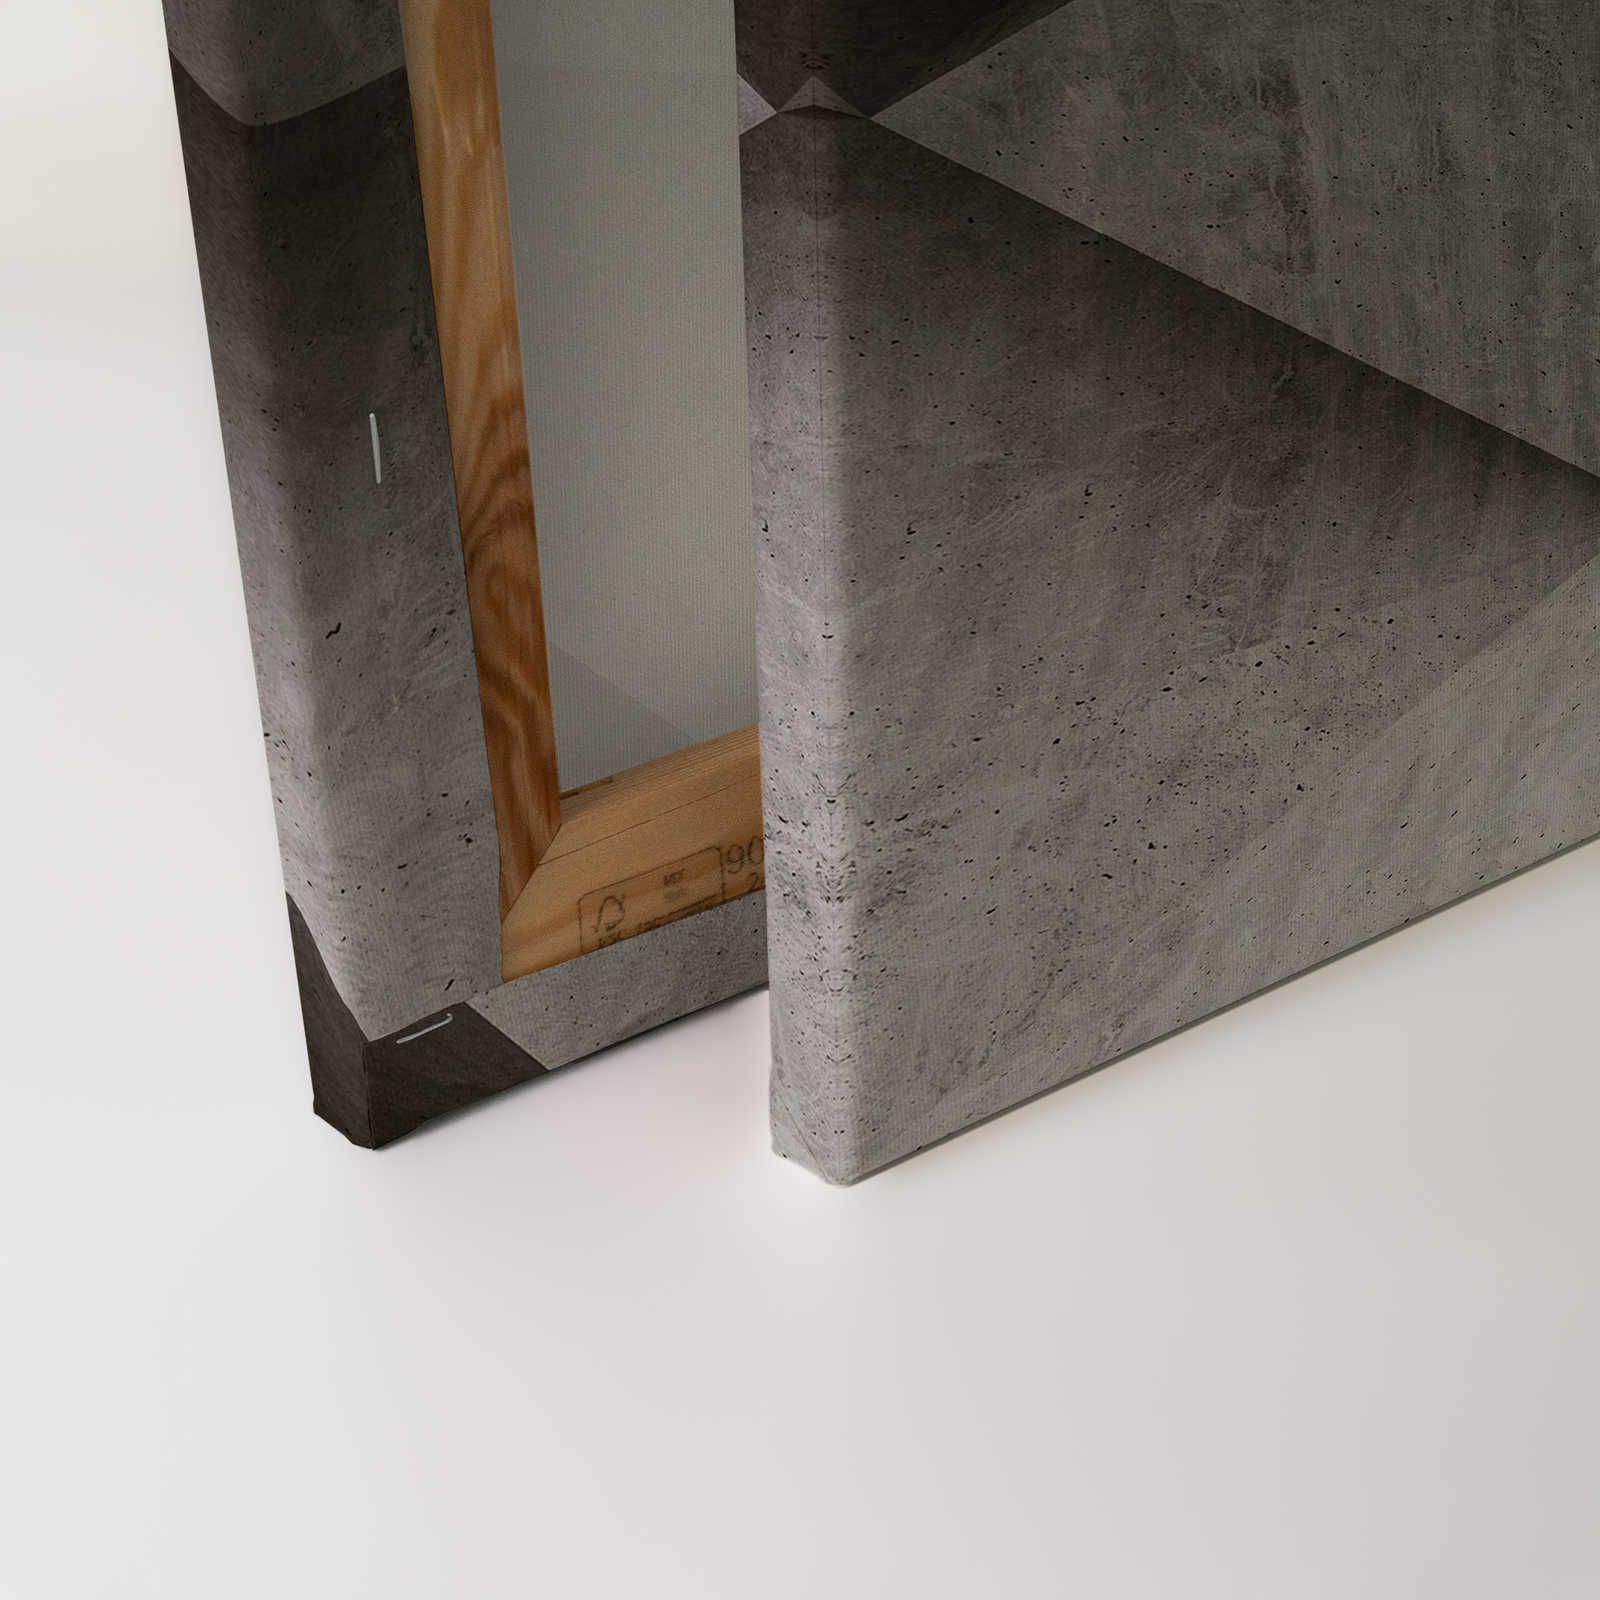             Boulder 1 - Pittura su tela con poligoni di cemento 3D - 0,90 m x 0,60 m
        